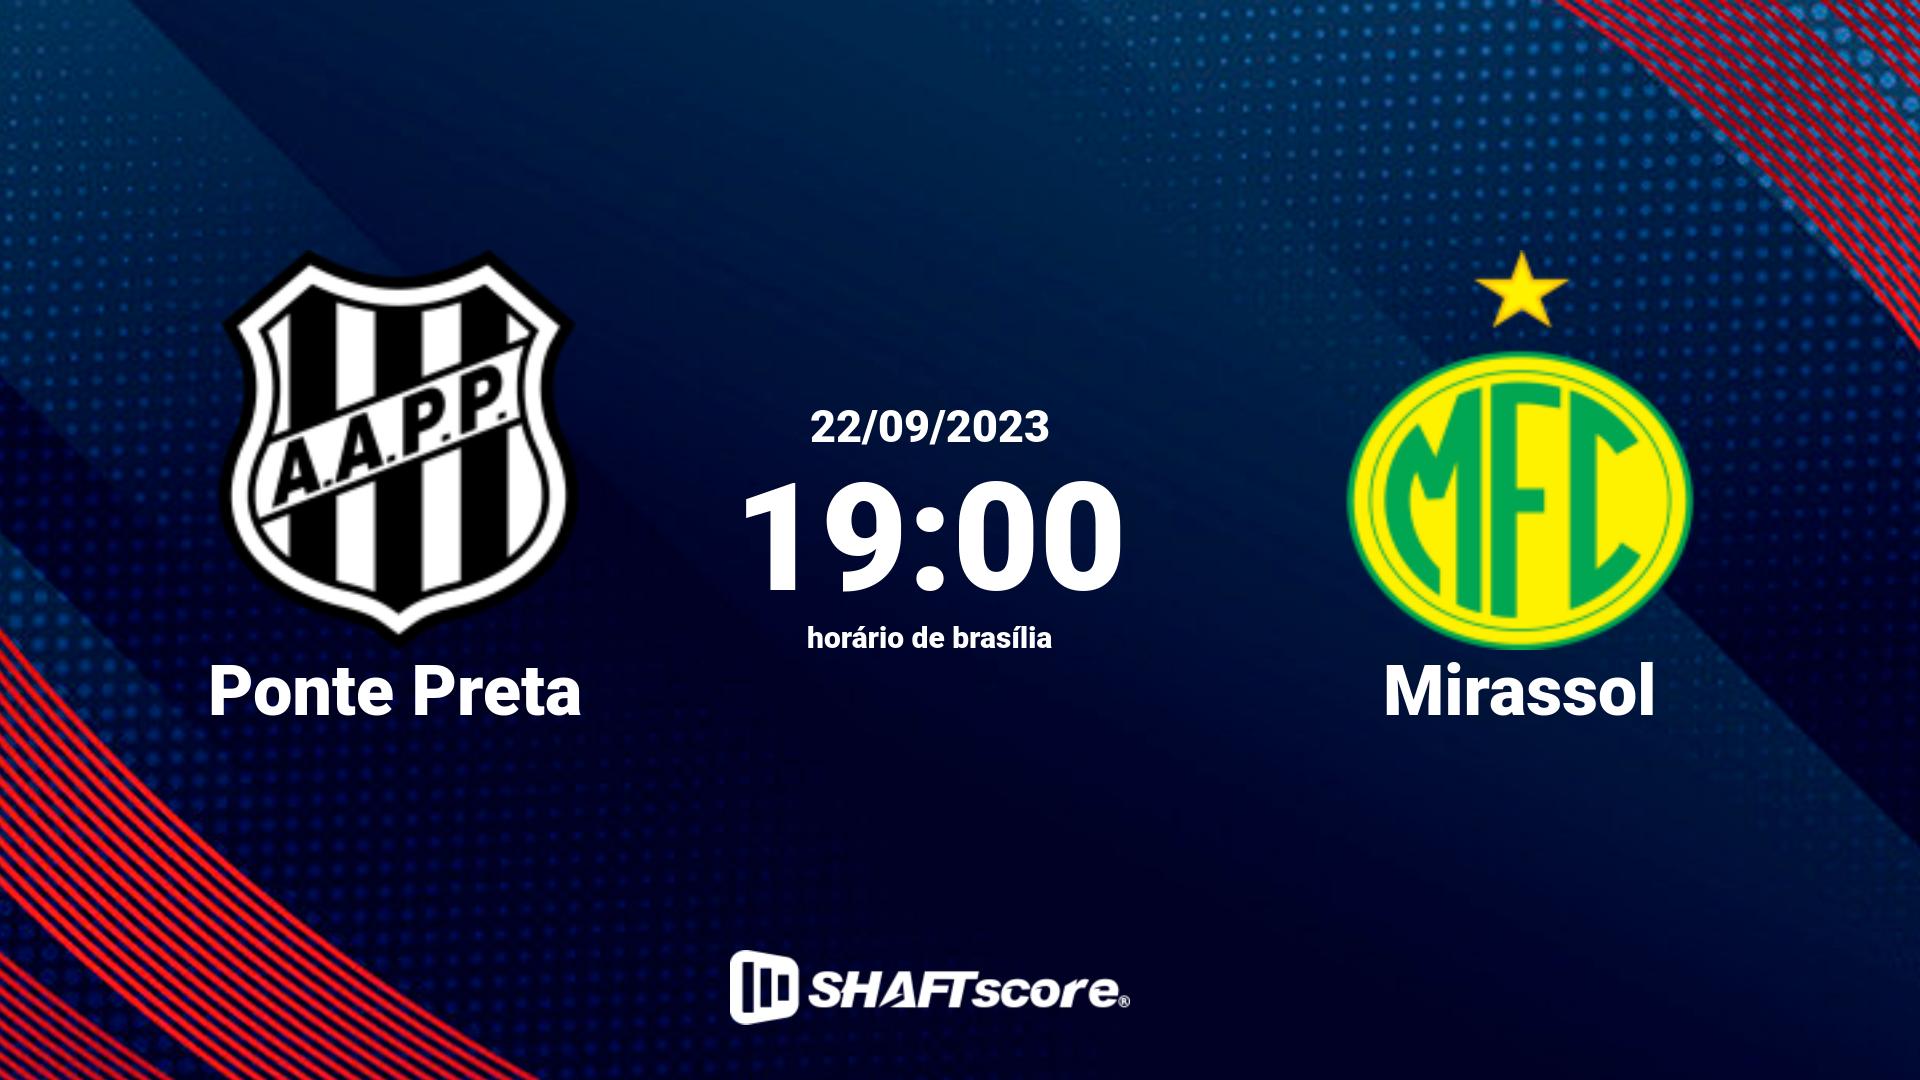 Estatísticas do jogo Ponte Preta vs Mirassol 22.09 19:00